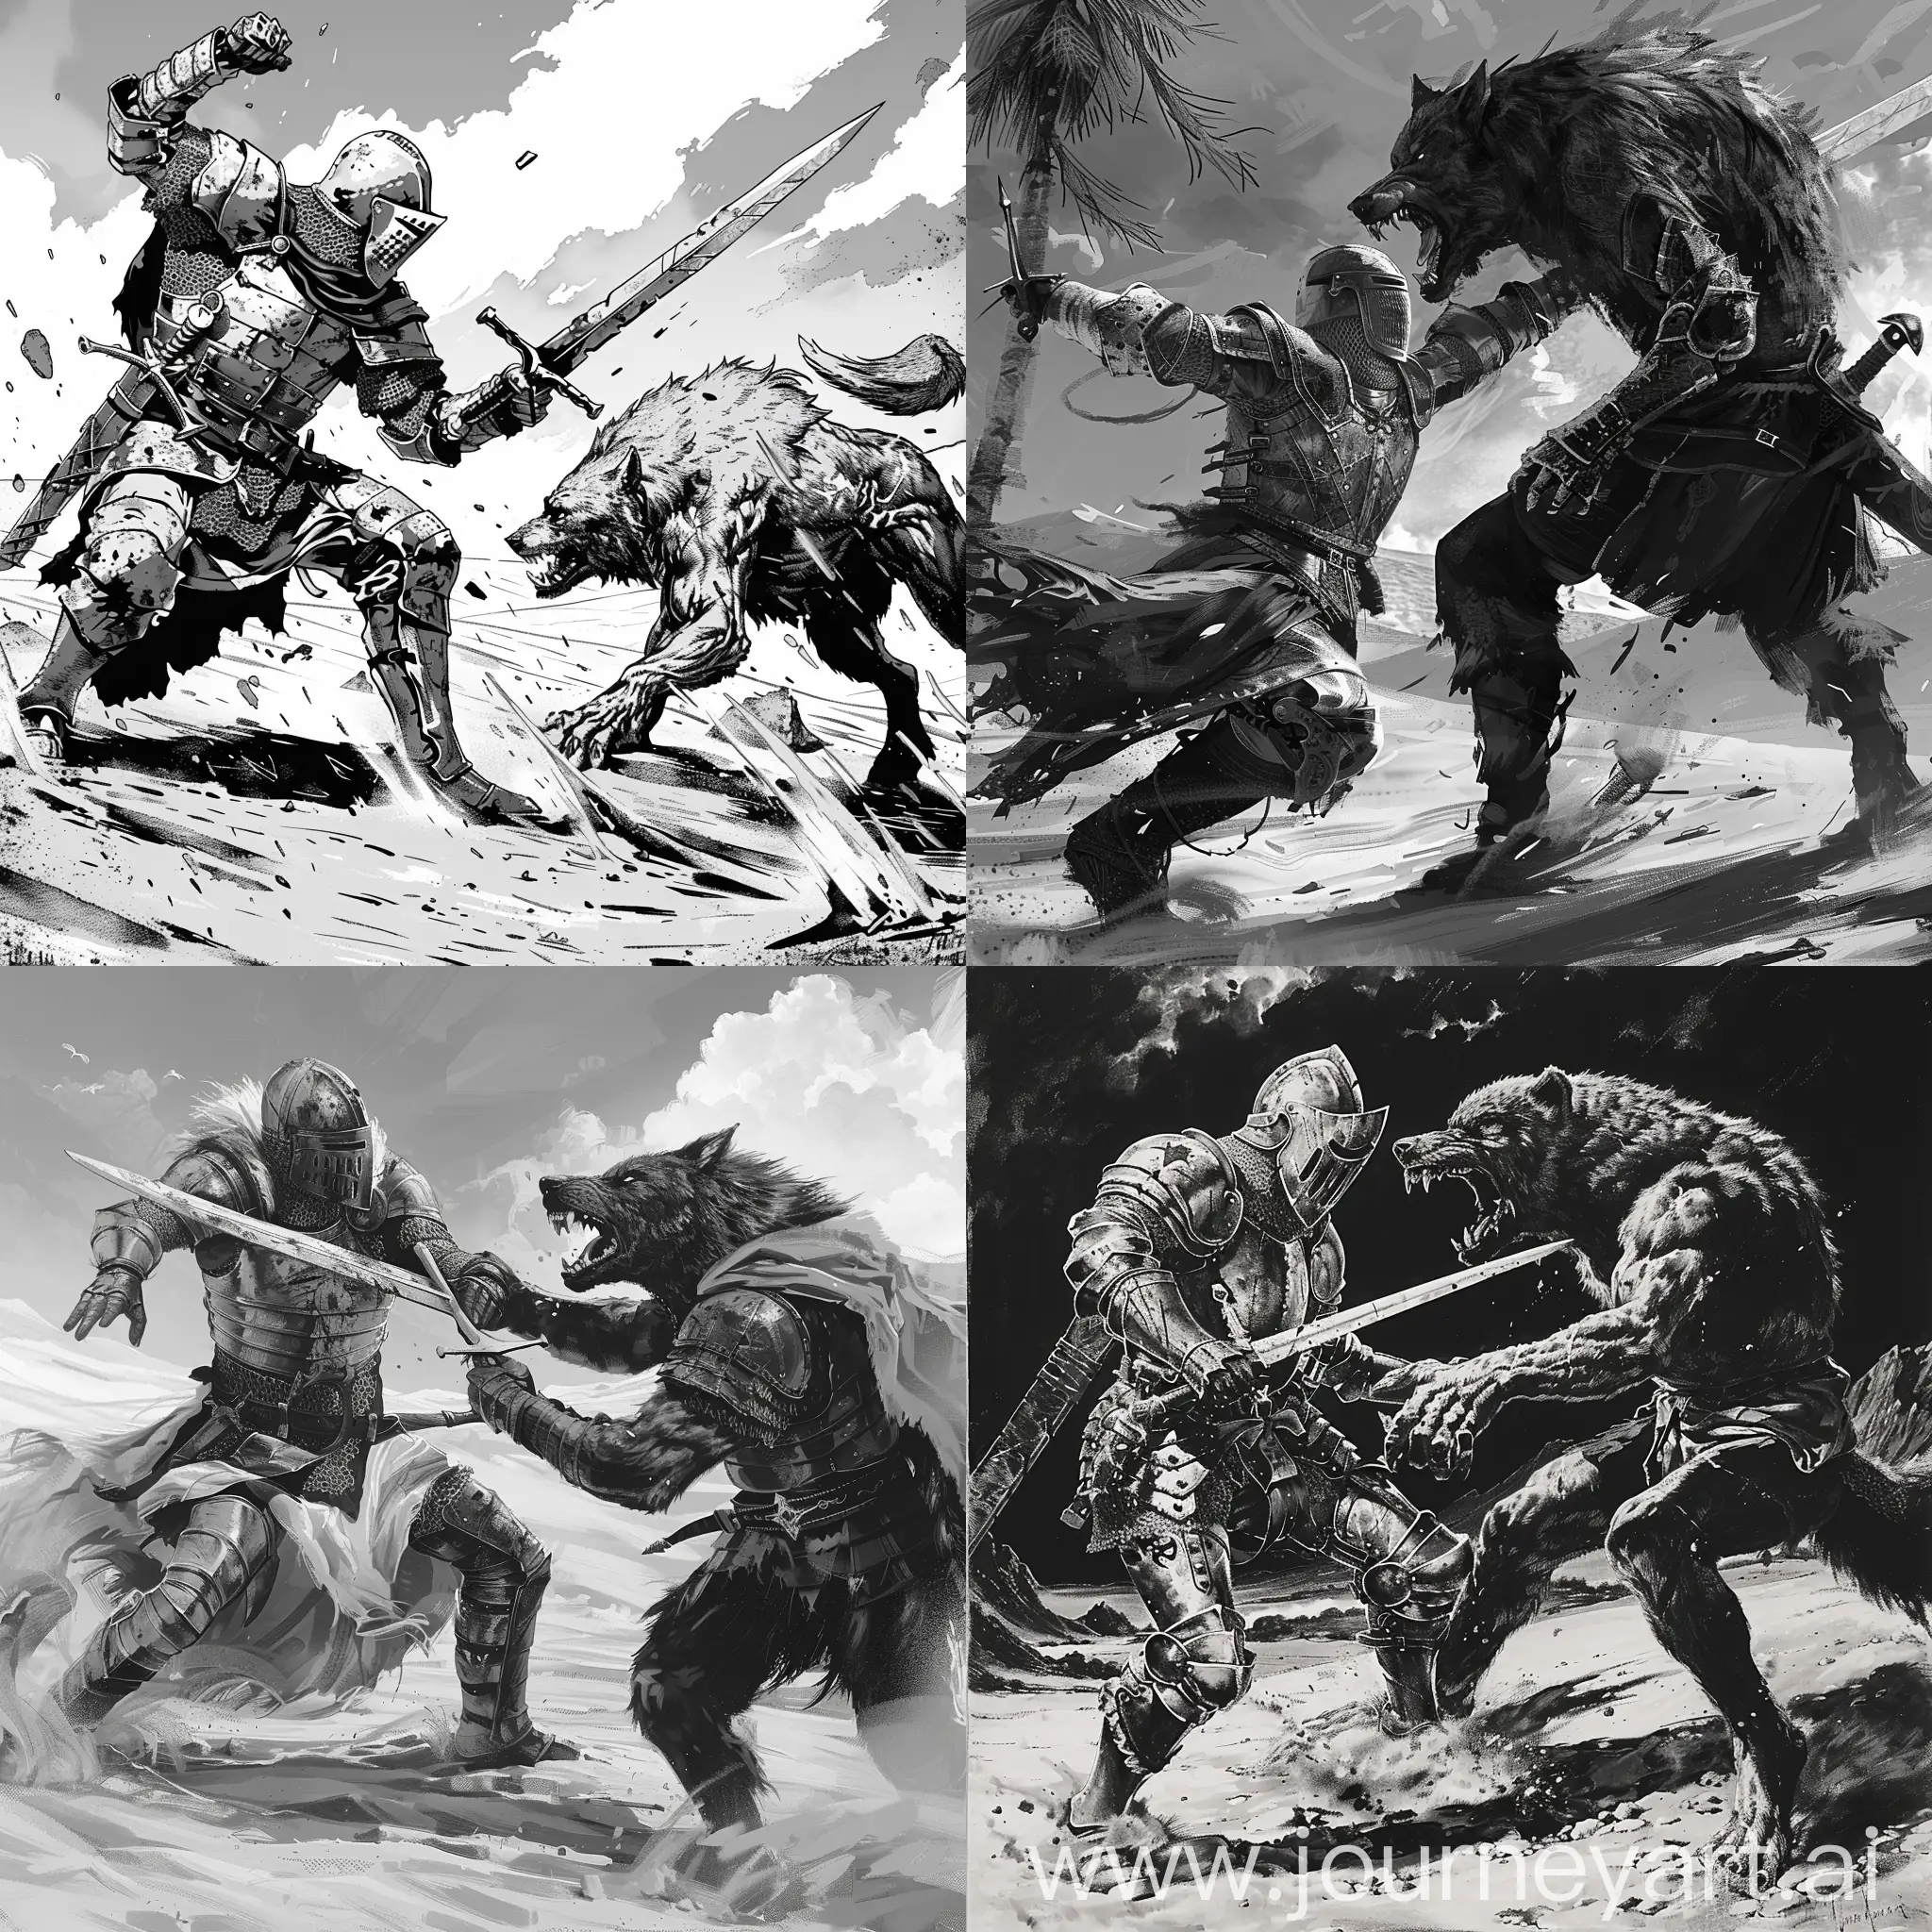 Berserk-Crusader-Knight-Battles-Werewolf-in-Monochrome-Desert